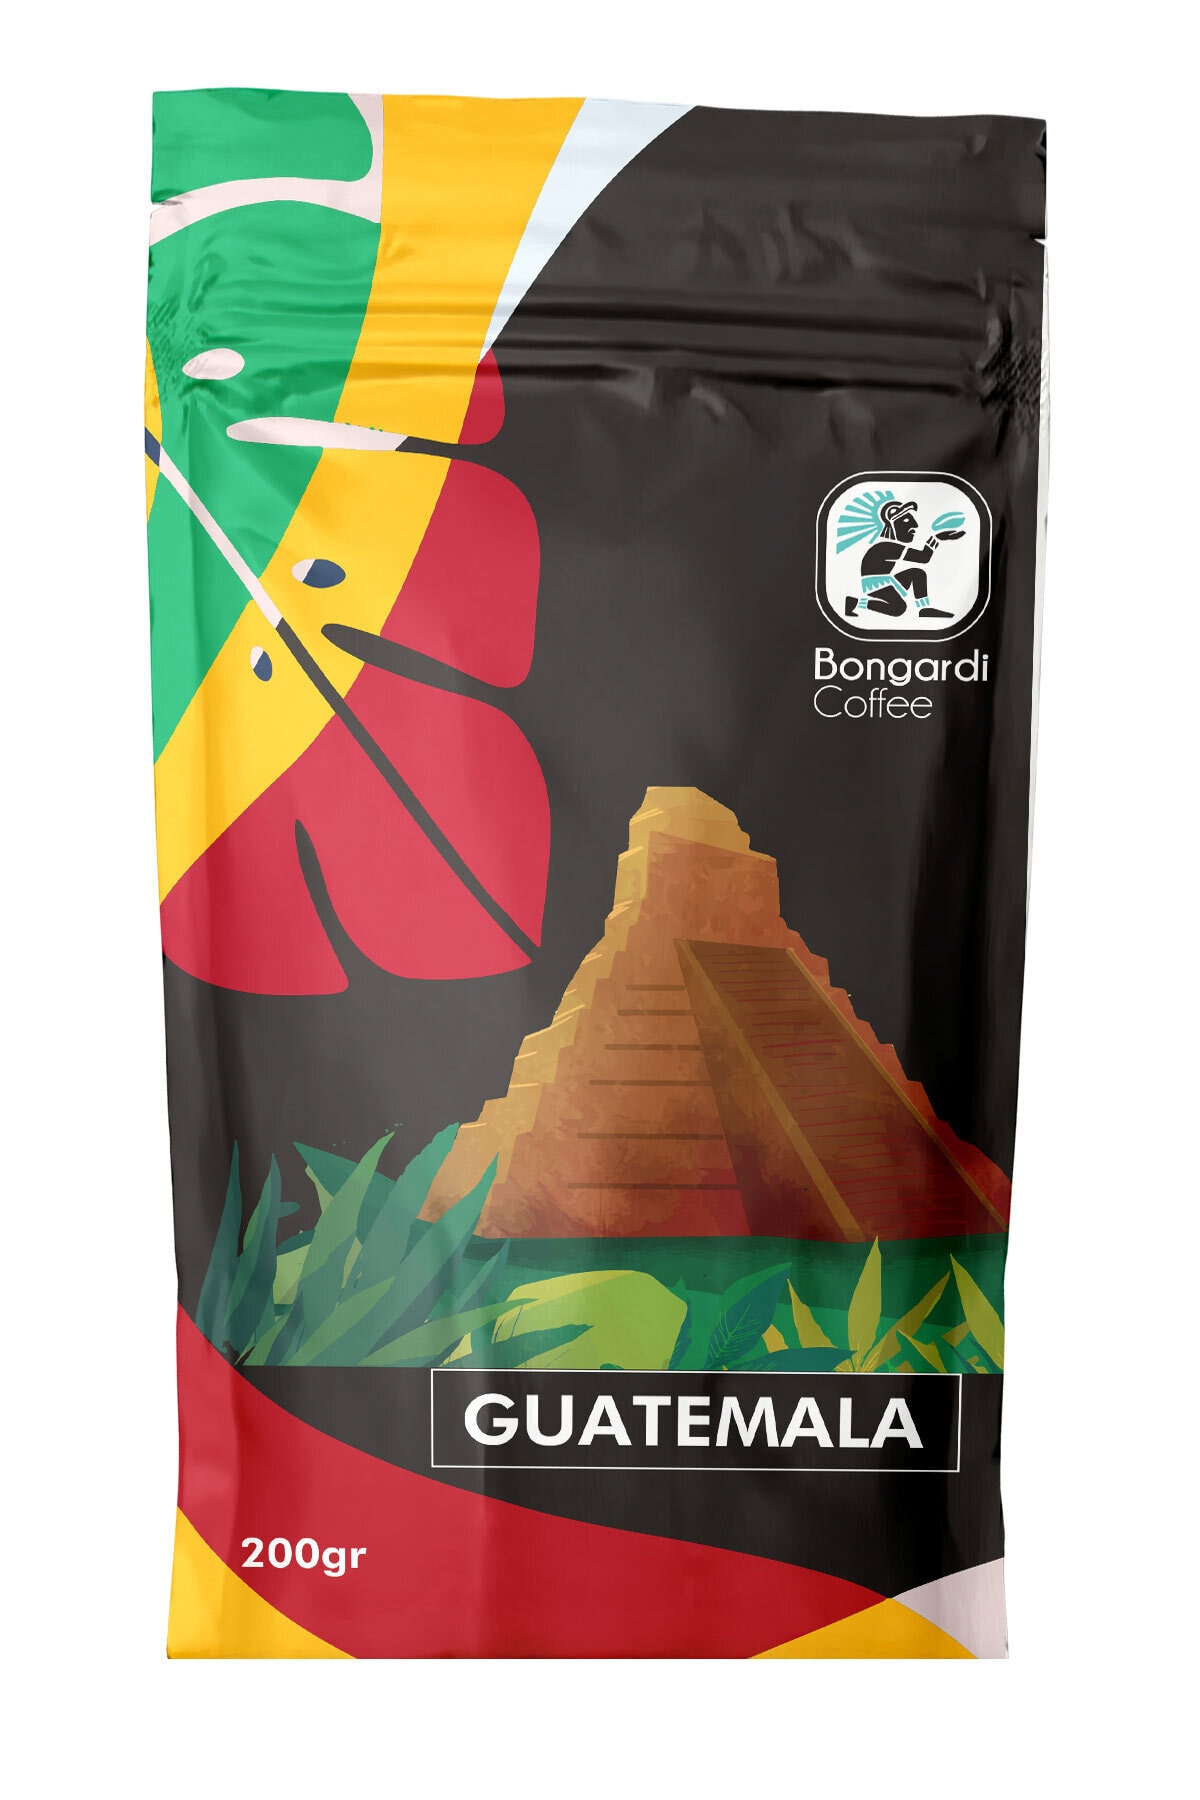 Bongardi Coffee Guatemala Yöresel Filtre Kahve Makinesi Uyumlu 200 gr